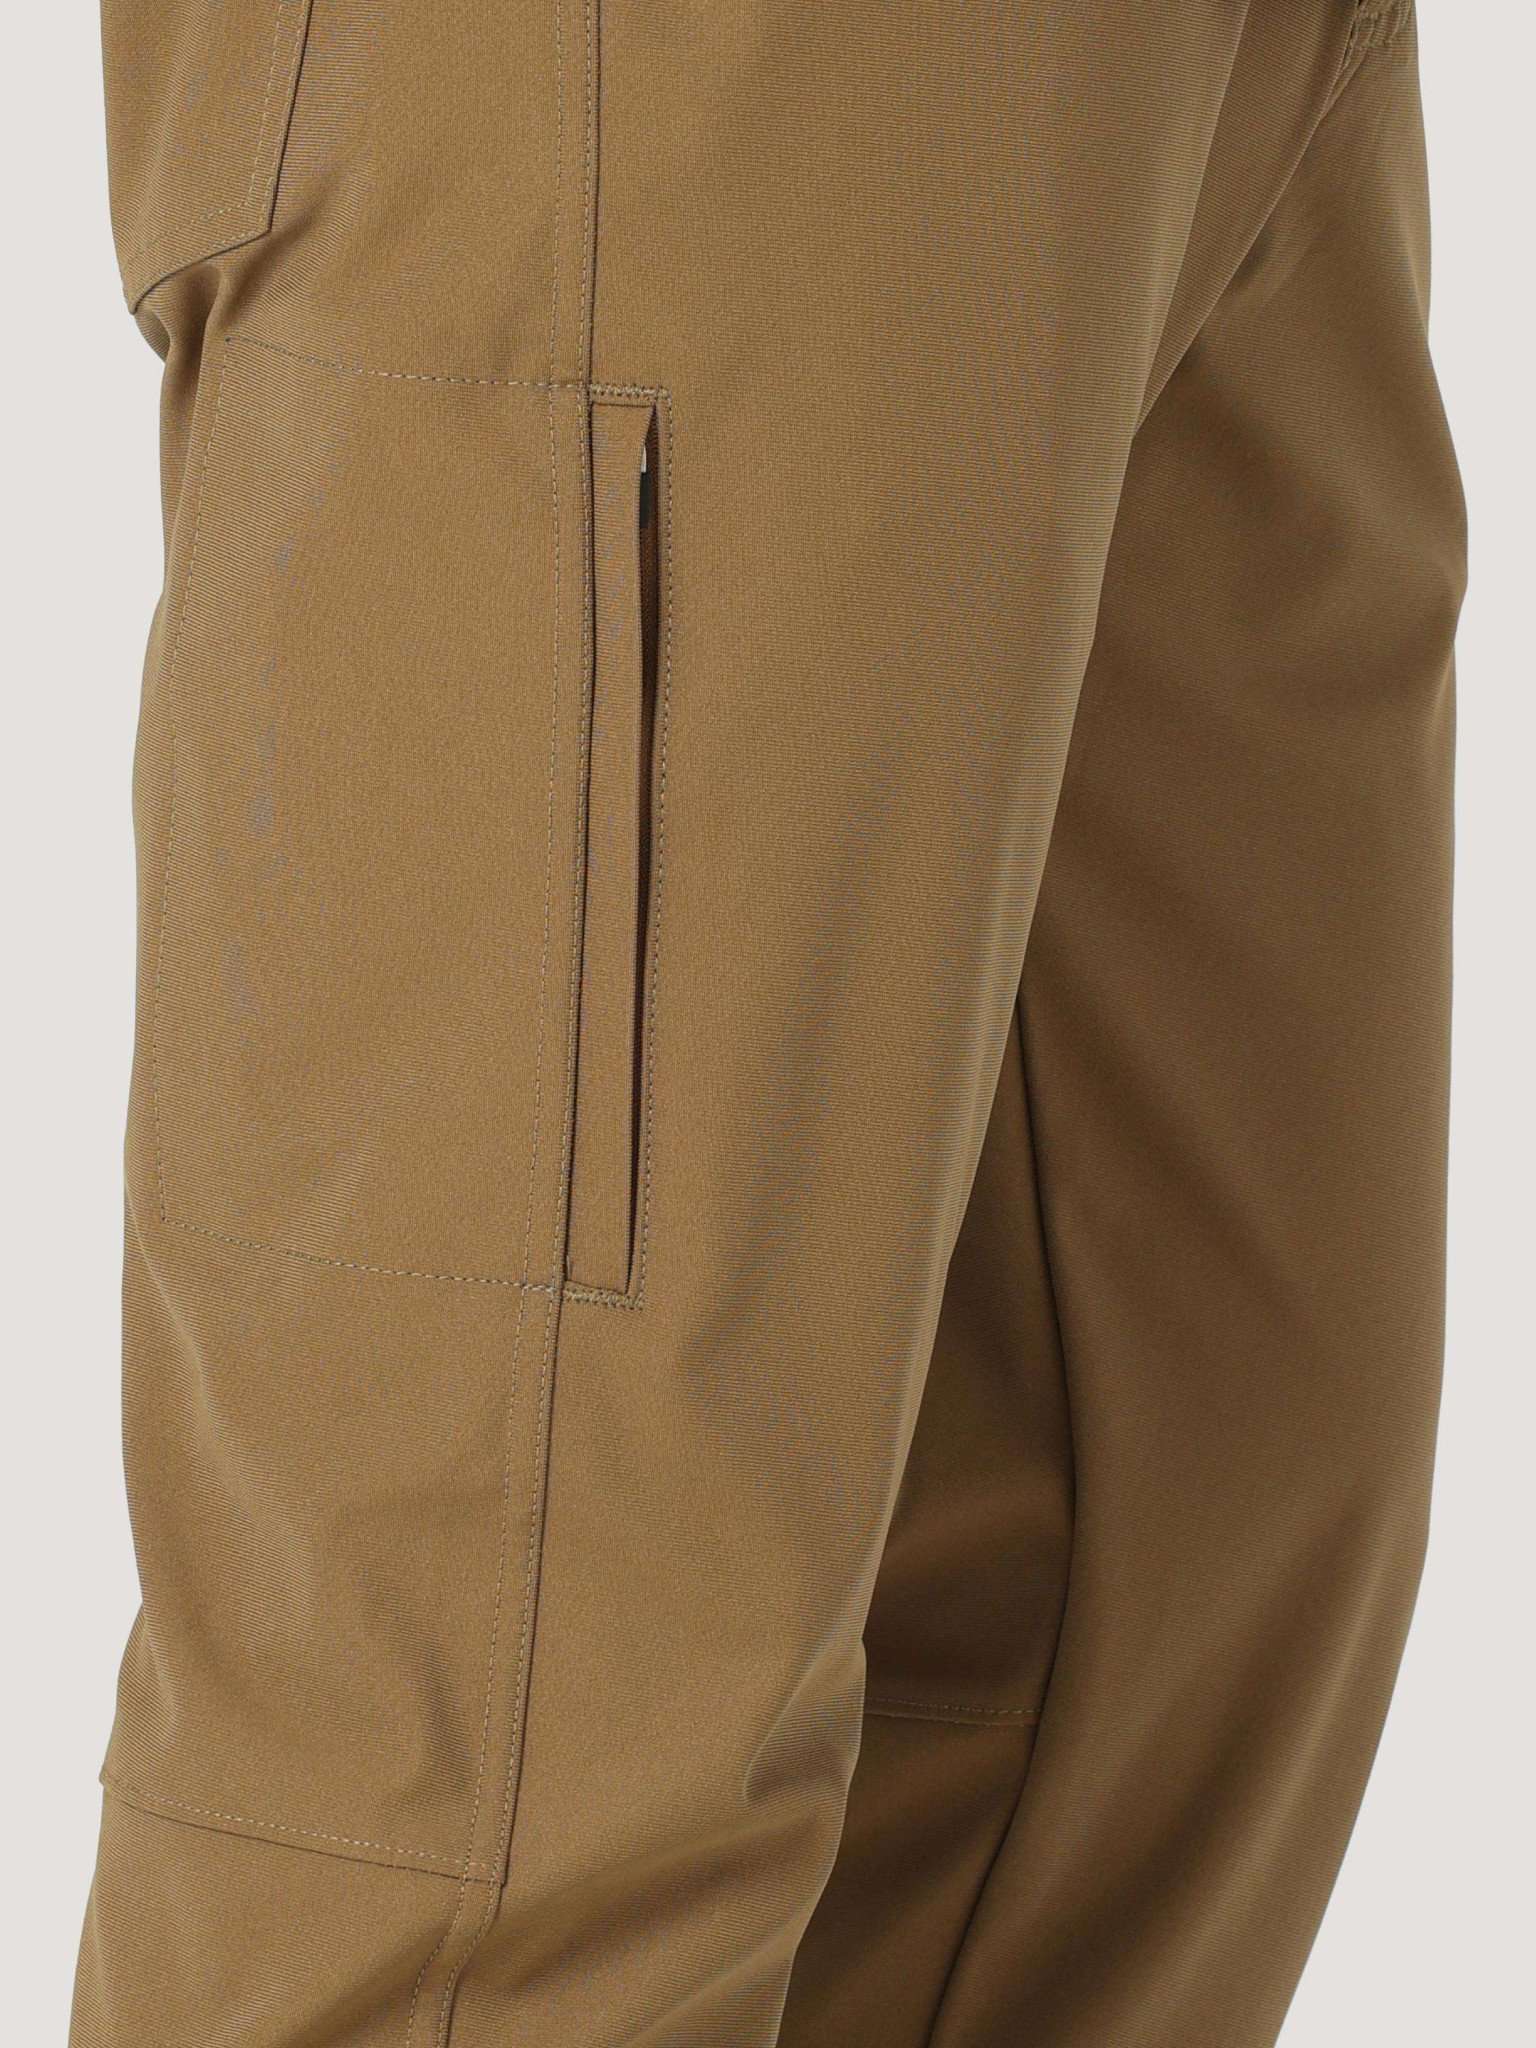 All Terrain Gear FWDS 5 Pocket Pants in Kangaroo Hosen Wrangler   